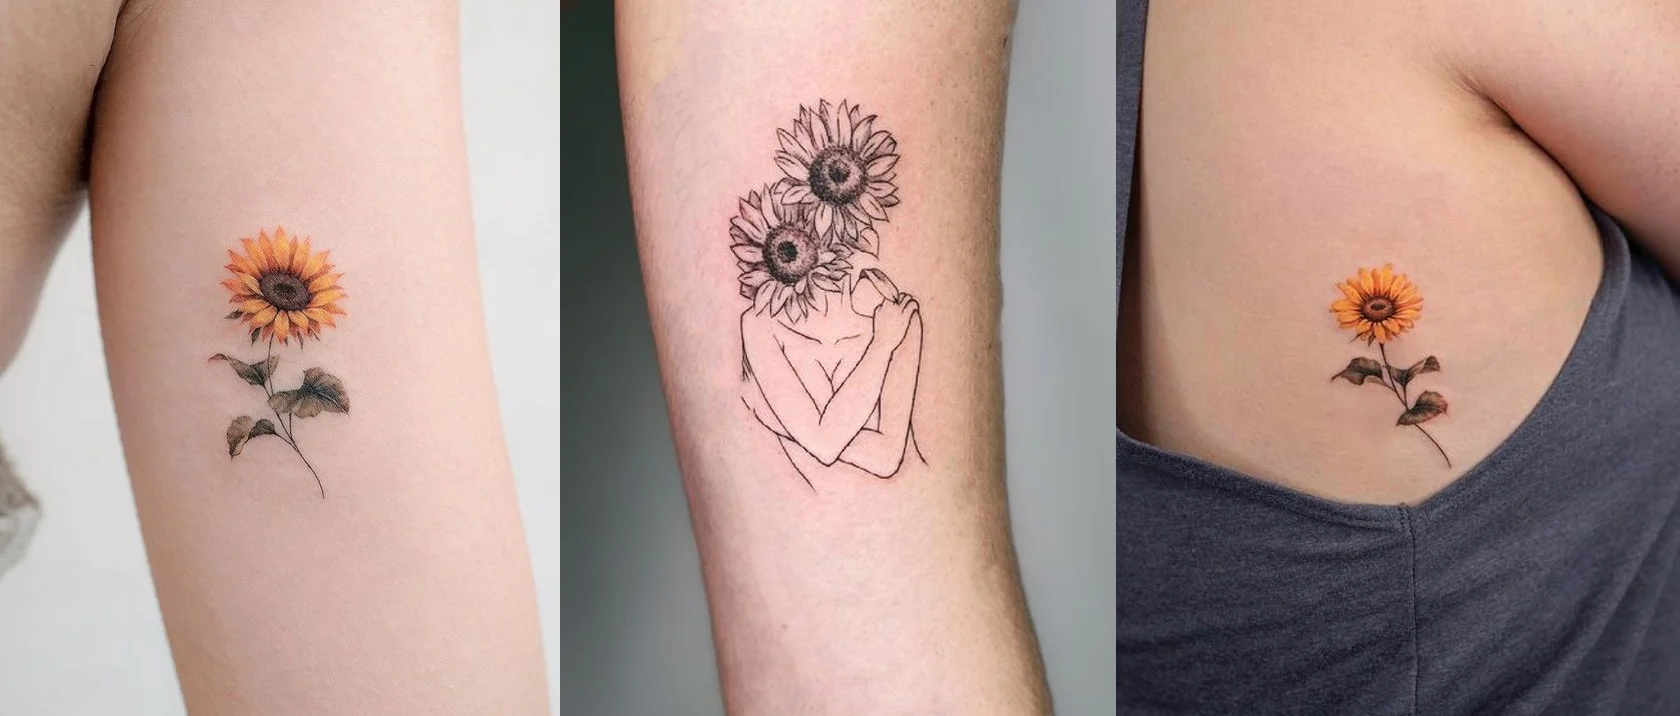 Tatuagem, ideias de tatuagem, tatuagem macabra, tatuagem old